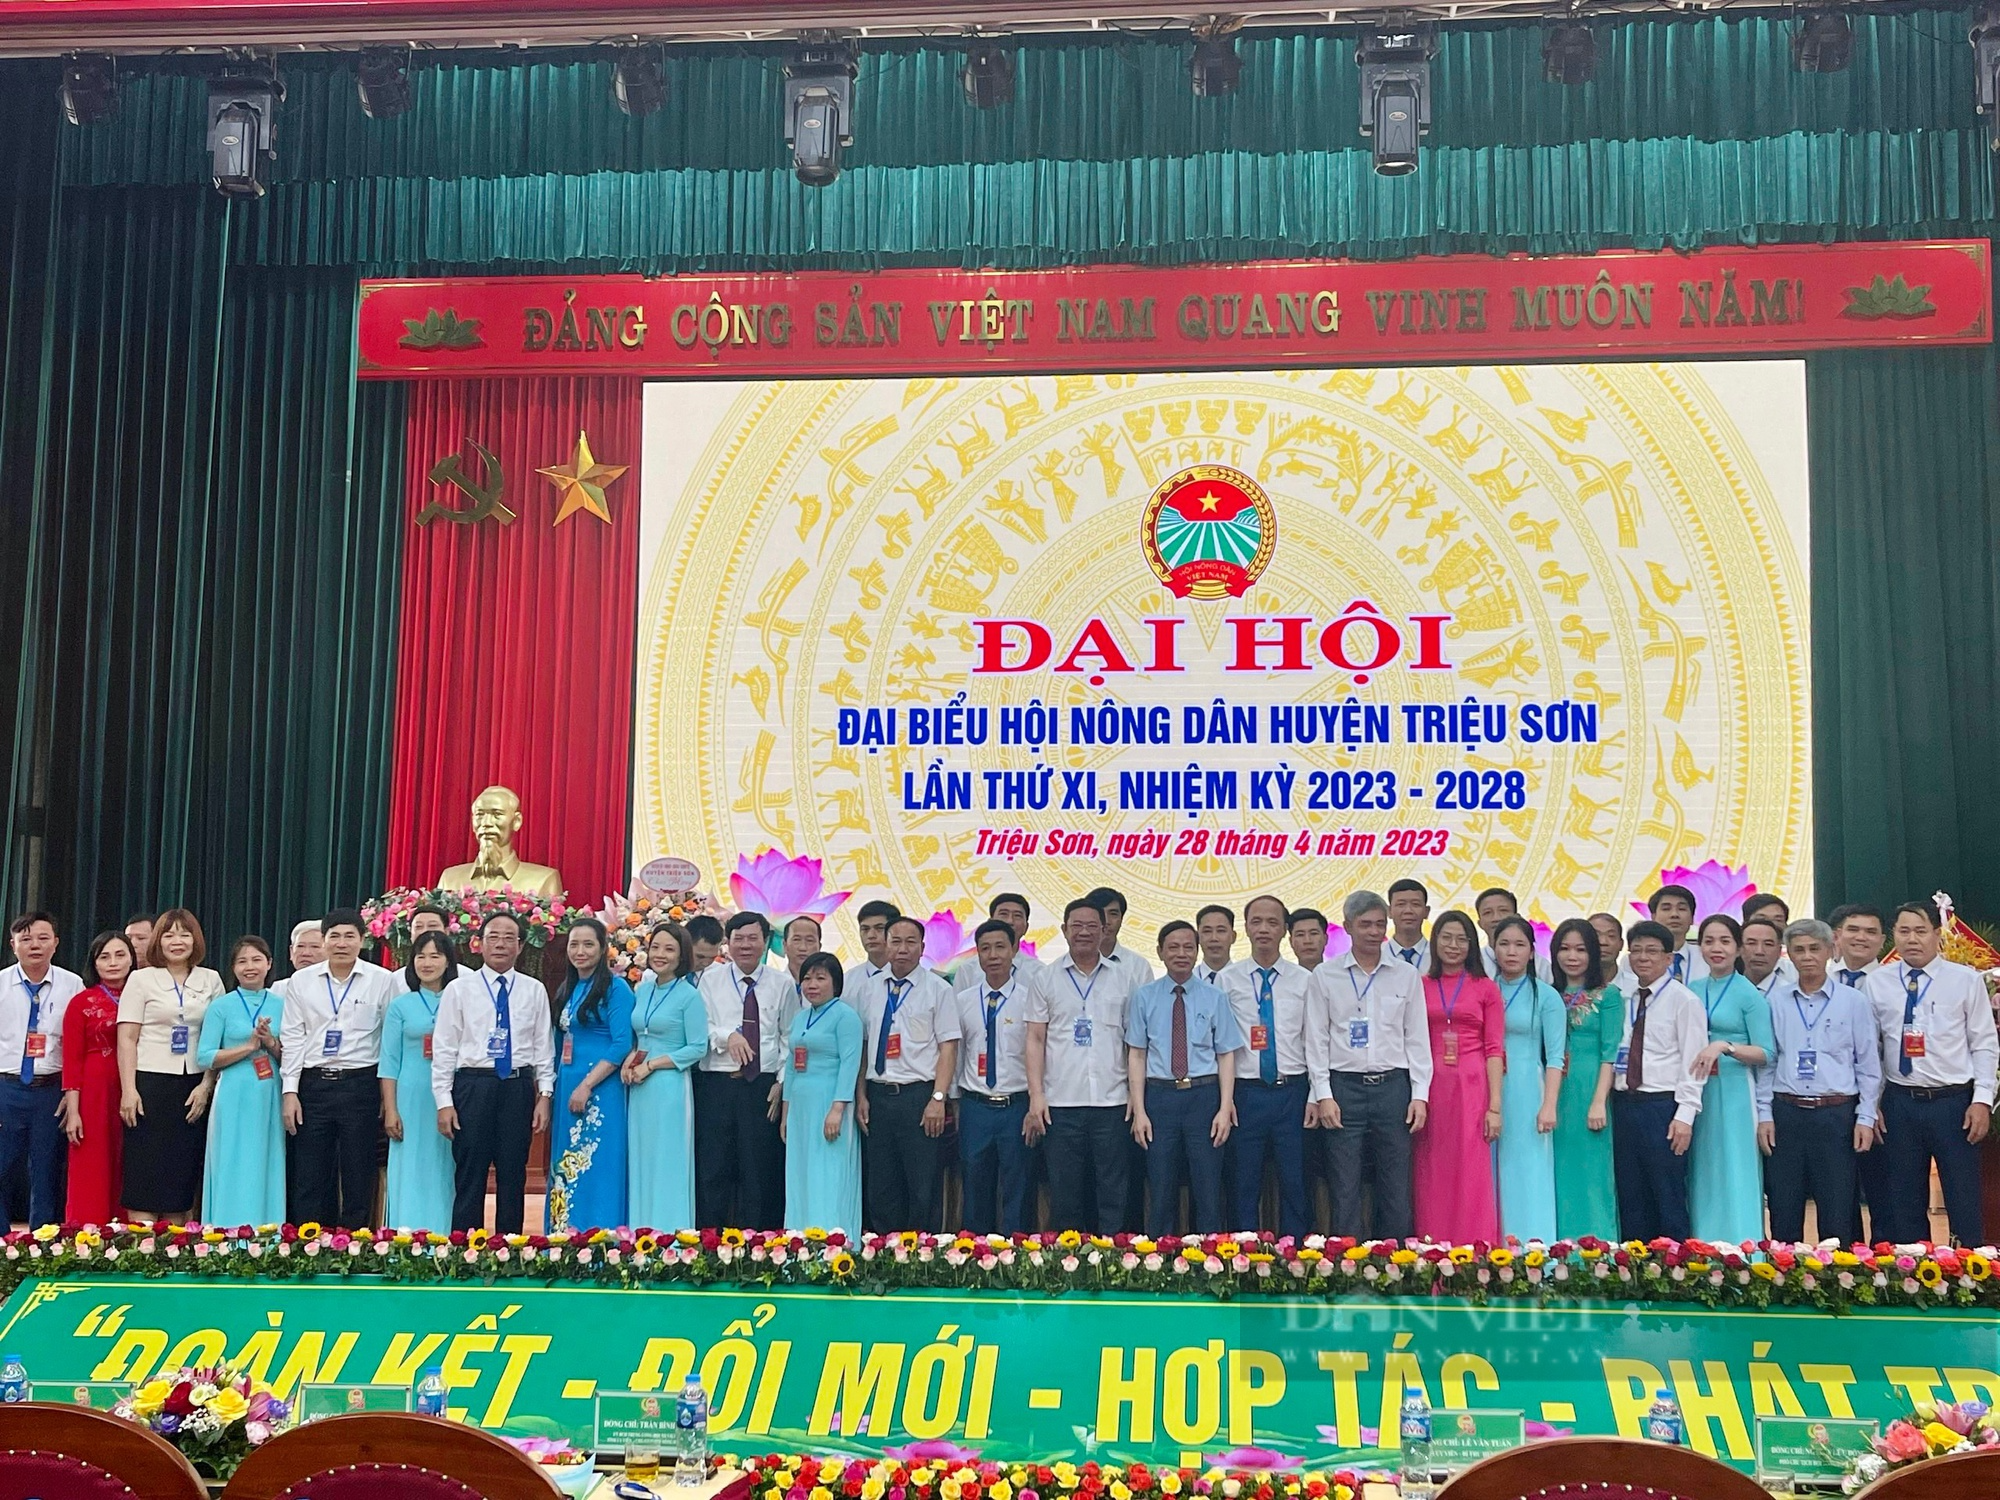 Đại hội Đại biểu Hội Nông dân huyện Triệu Sơn nhiệm kỳ 2023 – 2028, ông Nguyễn Xuân Trường tái cử - Ảnh 3.